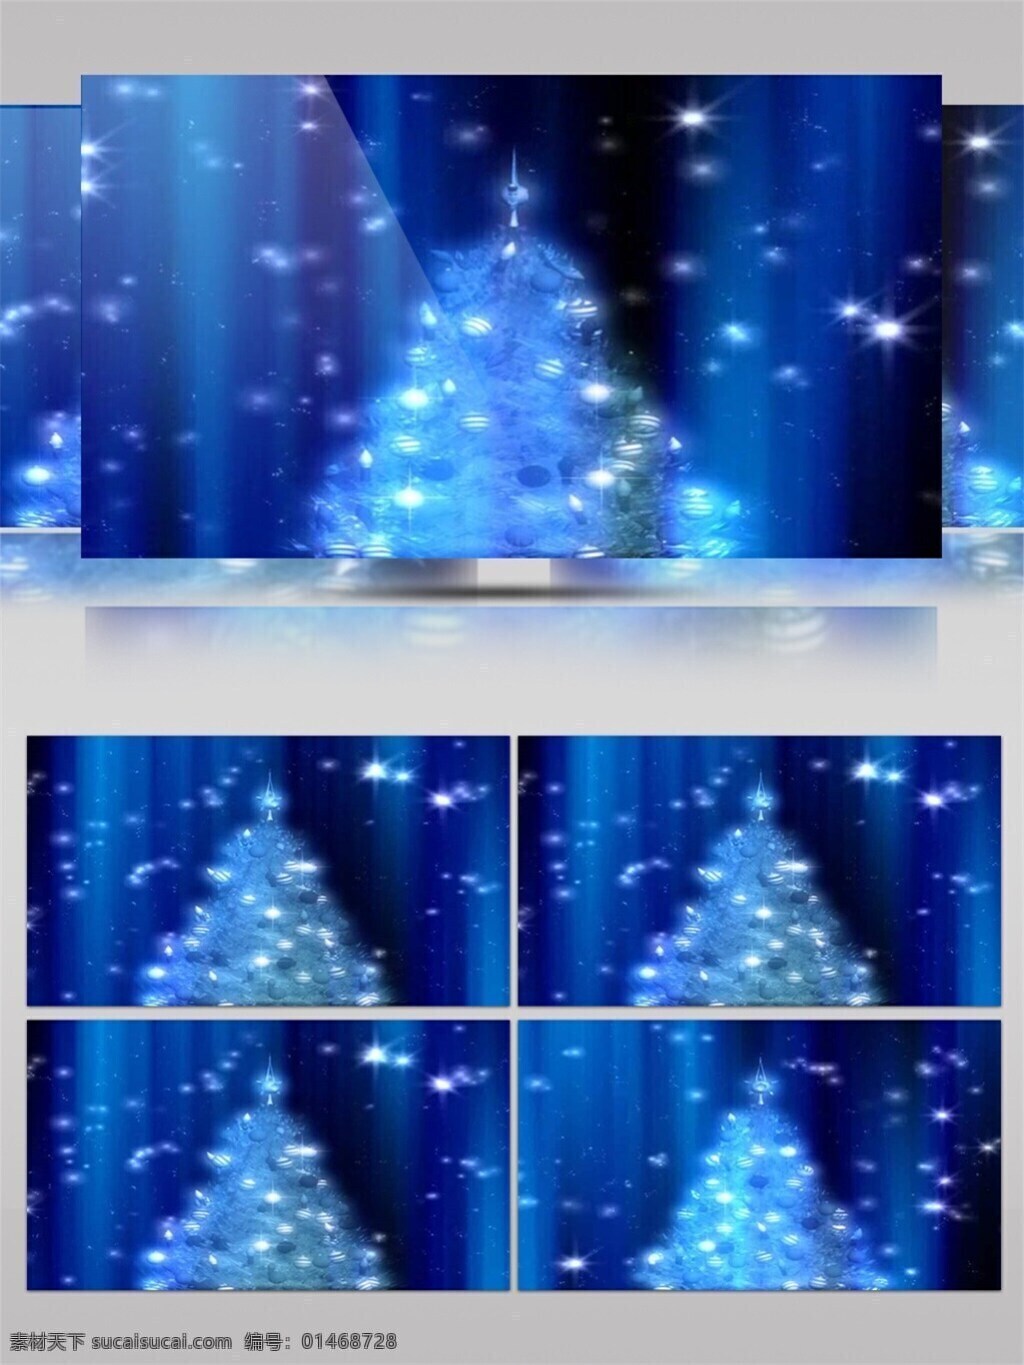 飘落 雪花 圣诞节 视频 节日壁纸 节日 特效 平安夜 圣诞节庆祝 雪花飘落 优美景色